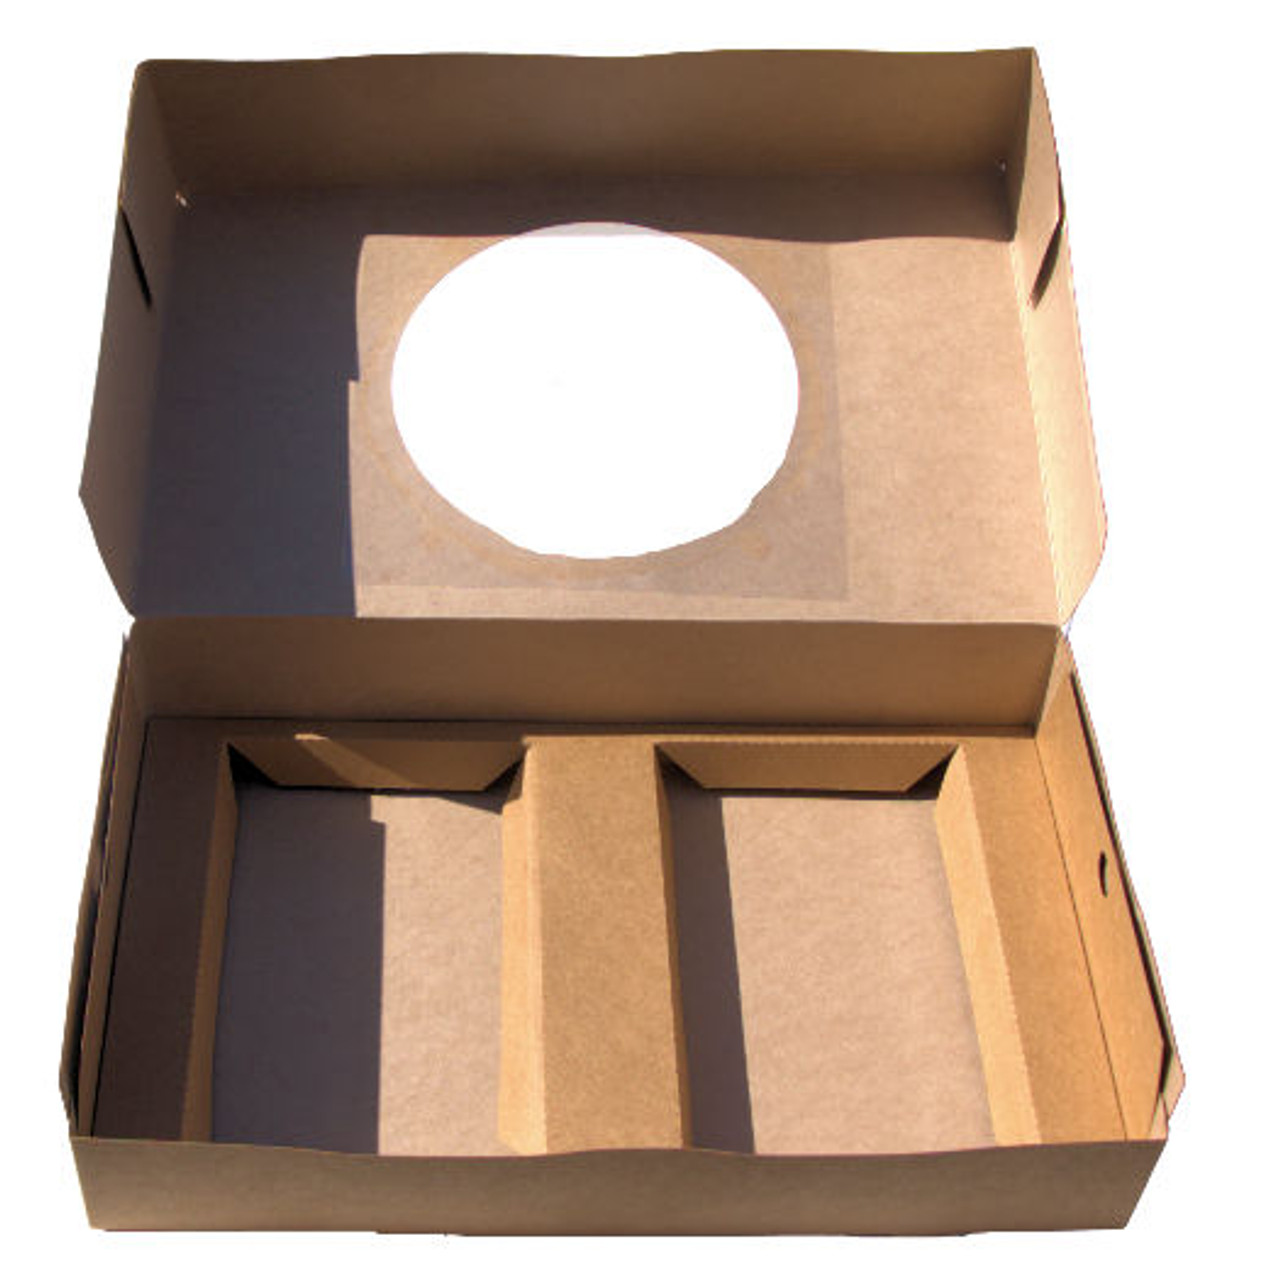 Pack x 5 Quality Kraft Cardboard Dual size Tray Bake Box with window 330 x 200 x 75mm 